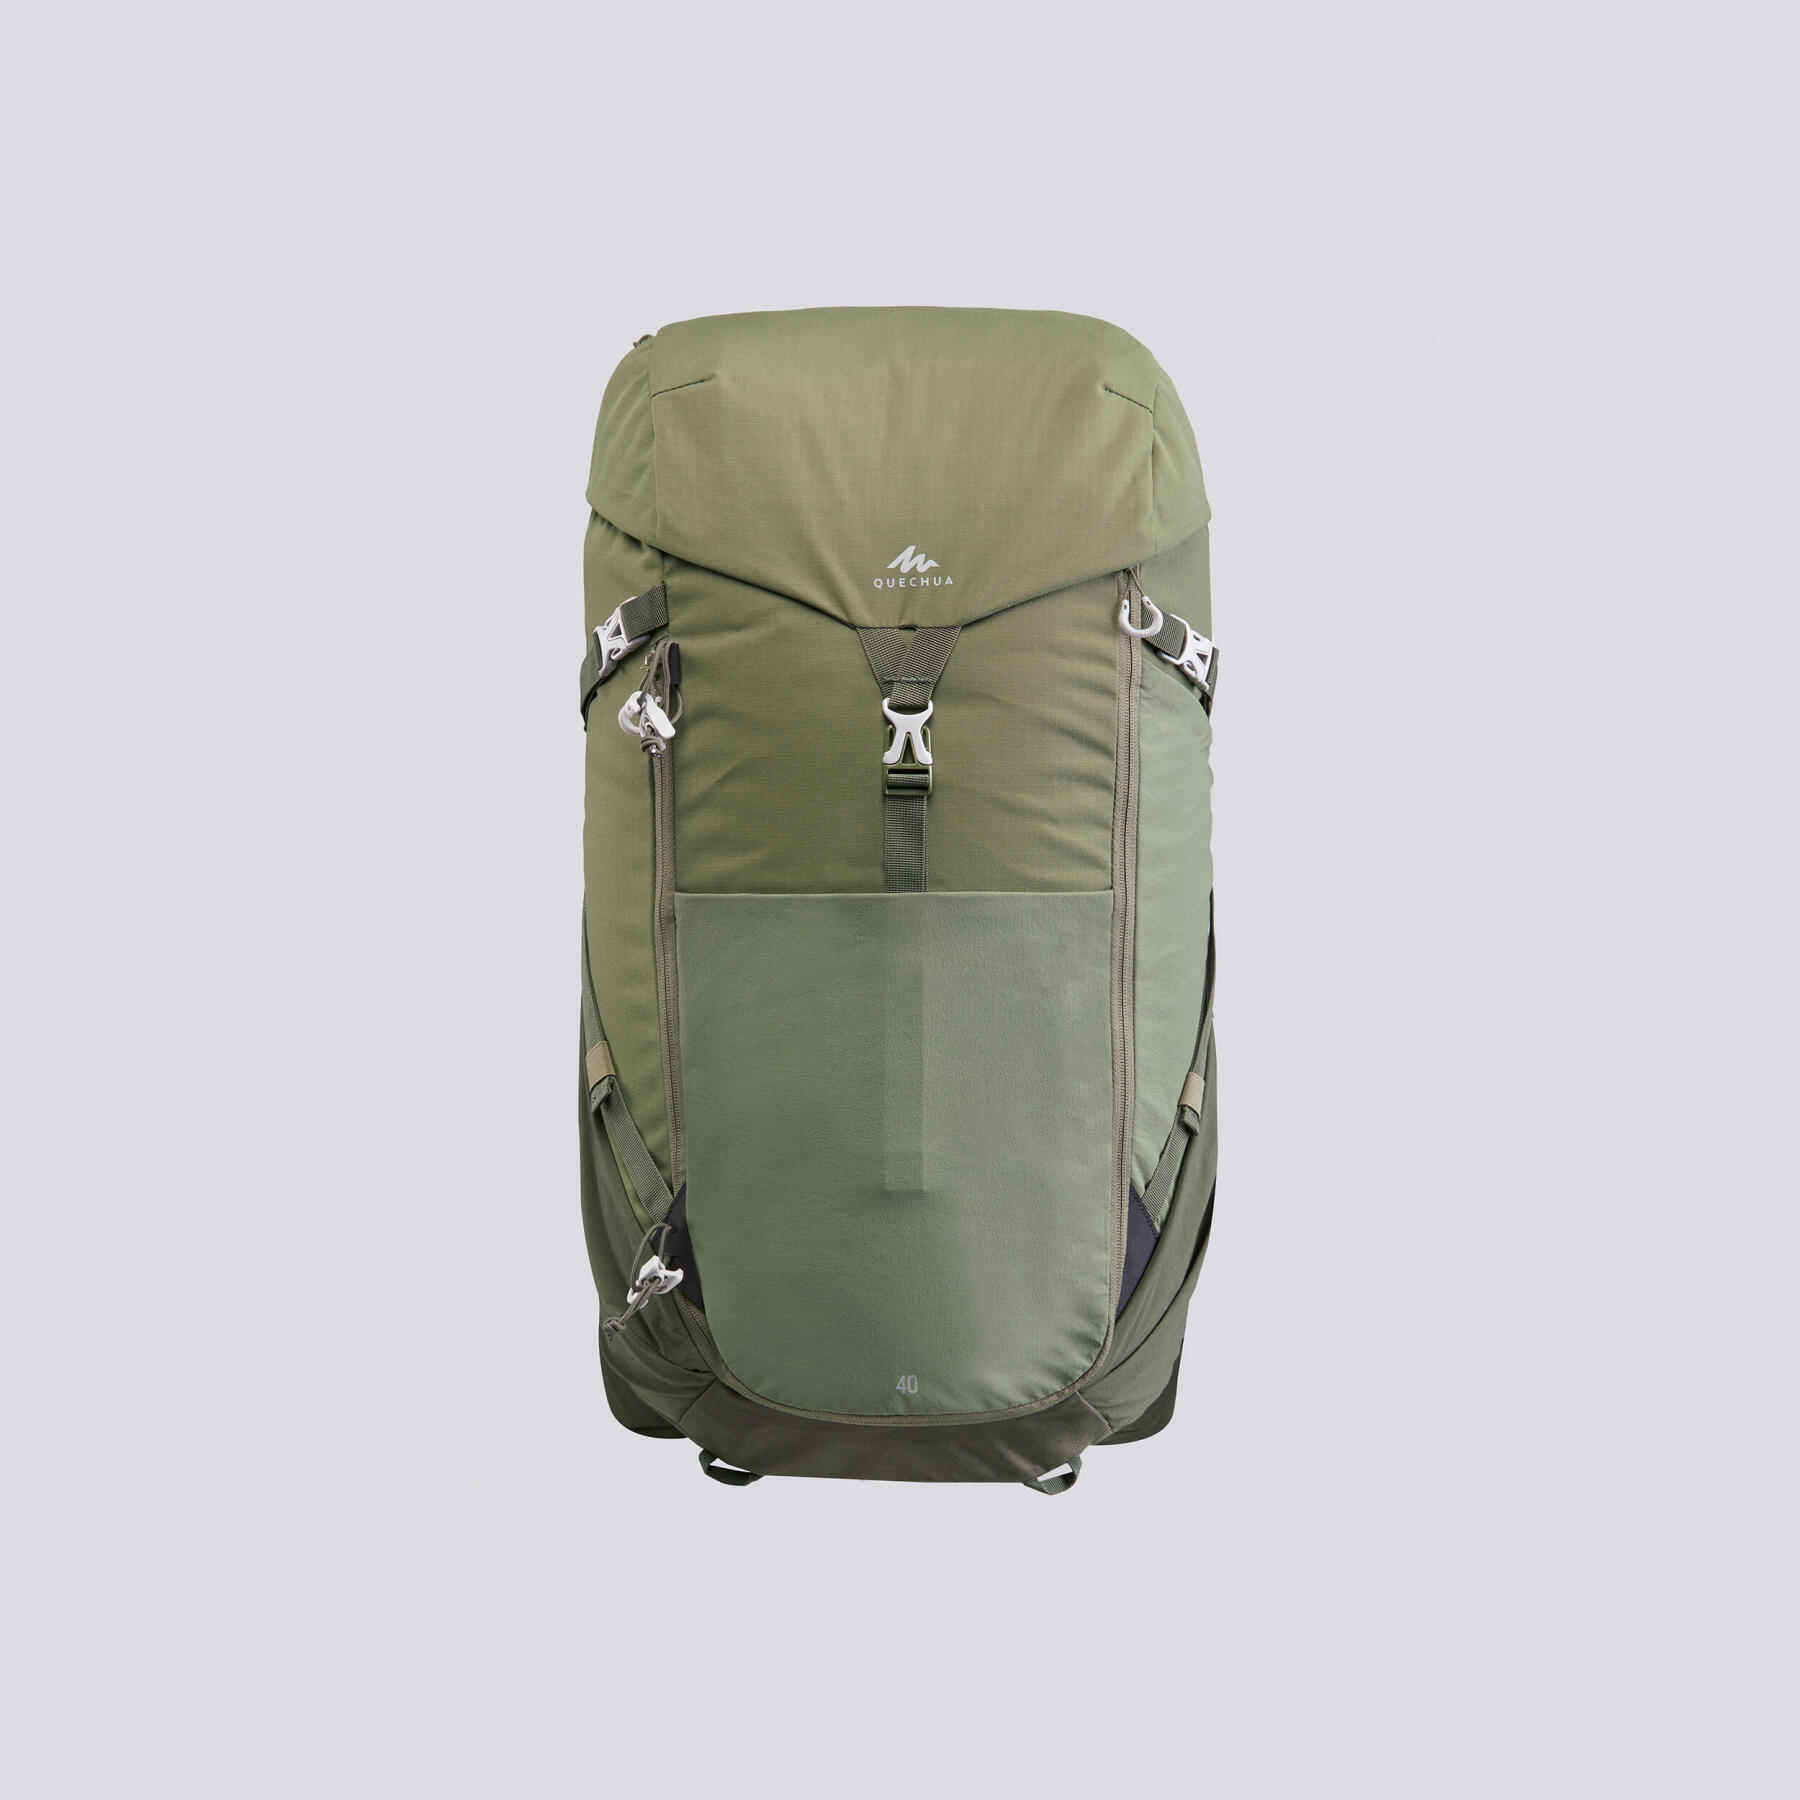 Decathlon 40/60 L Basic Hiking Backpack Rain Cover, Adult Unisex, Size: One size, Orange